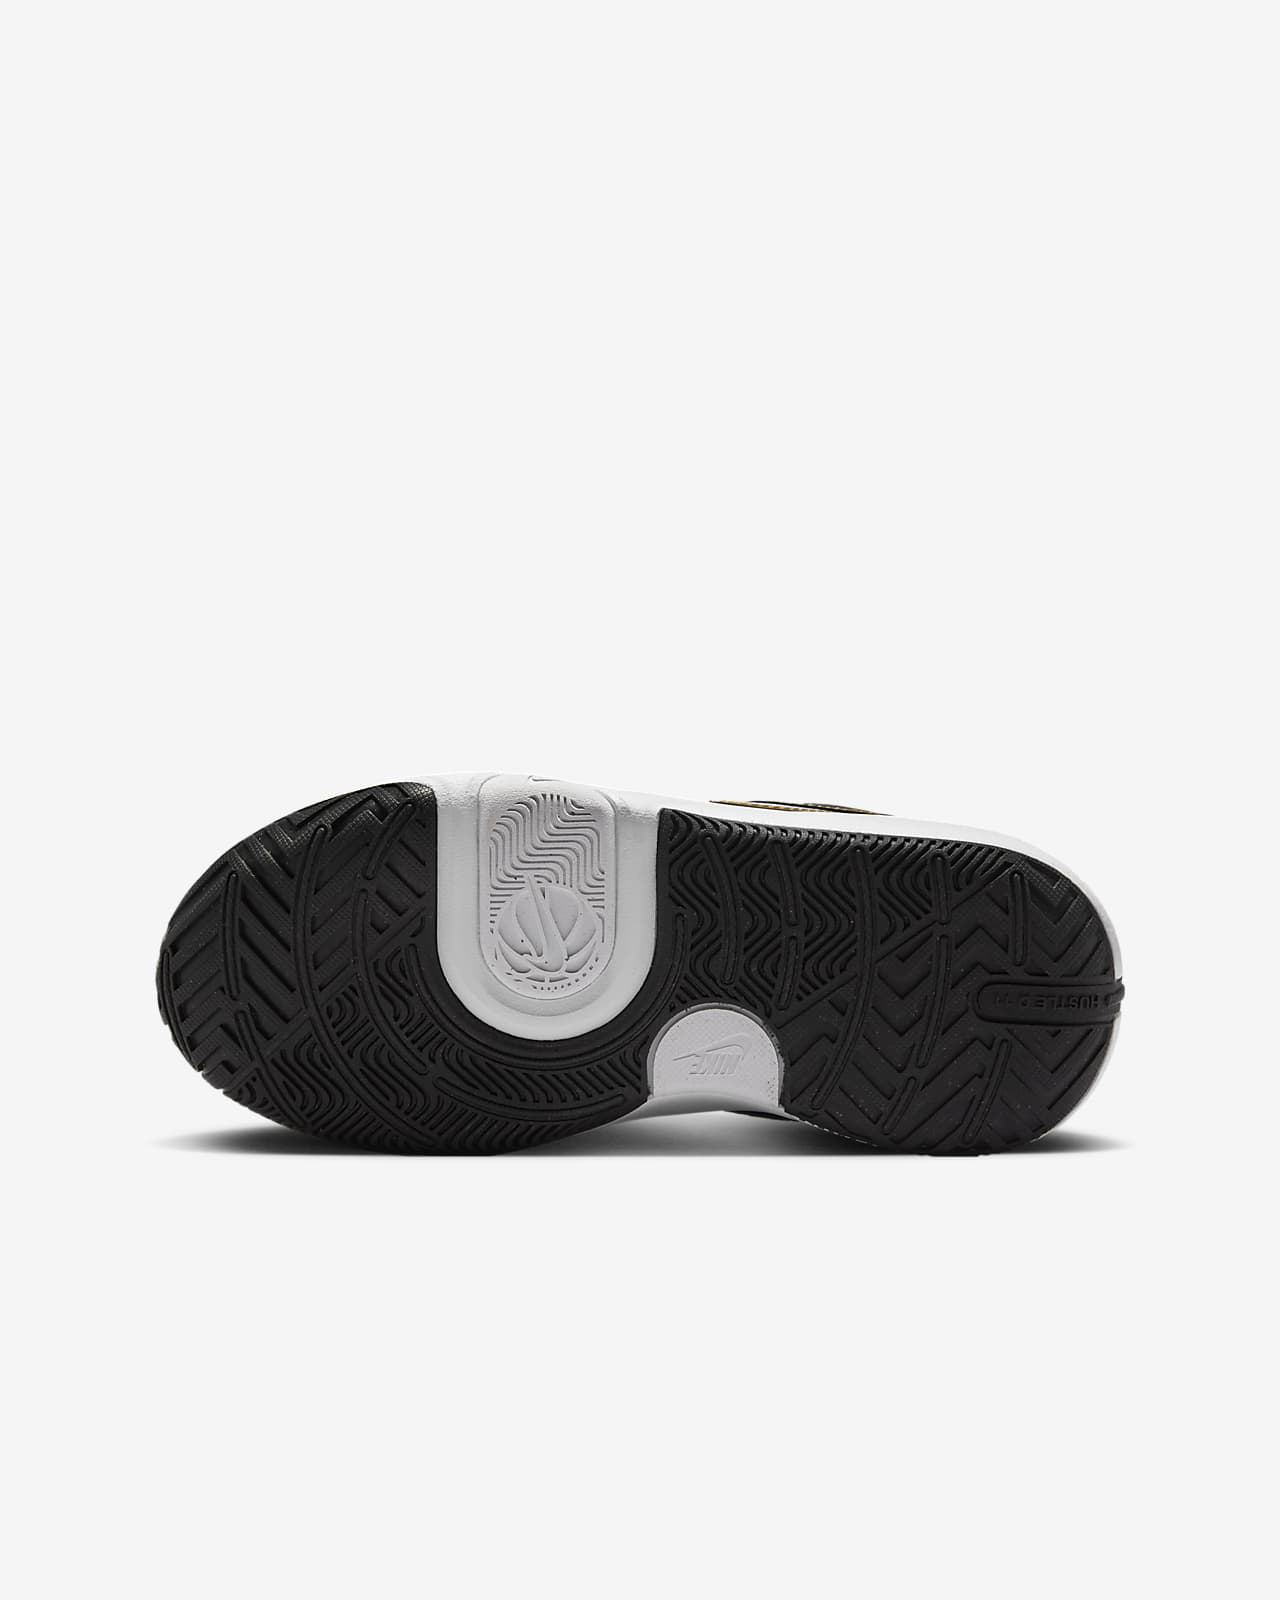 Zapatillas de baloncesto - Niño/a - Nike Team Hustle D 8 SD